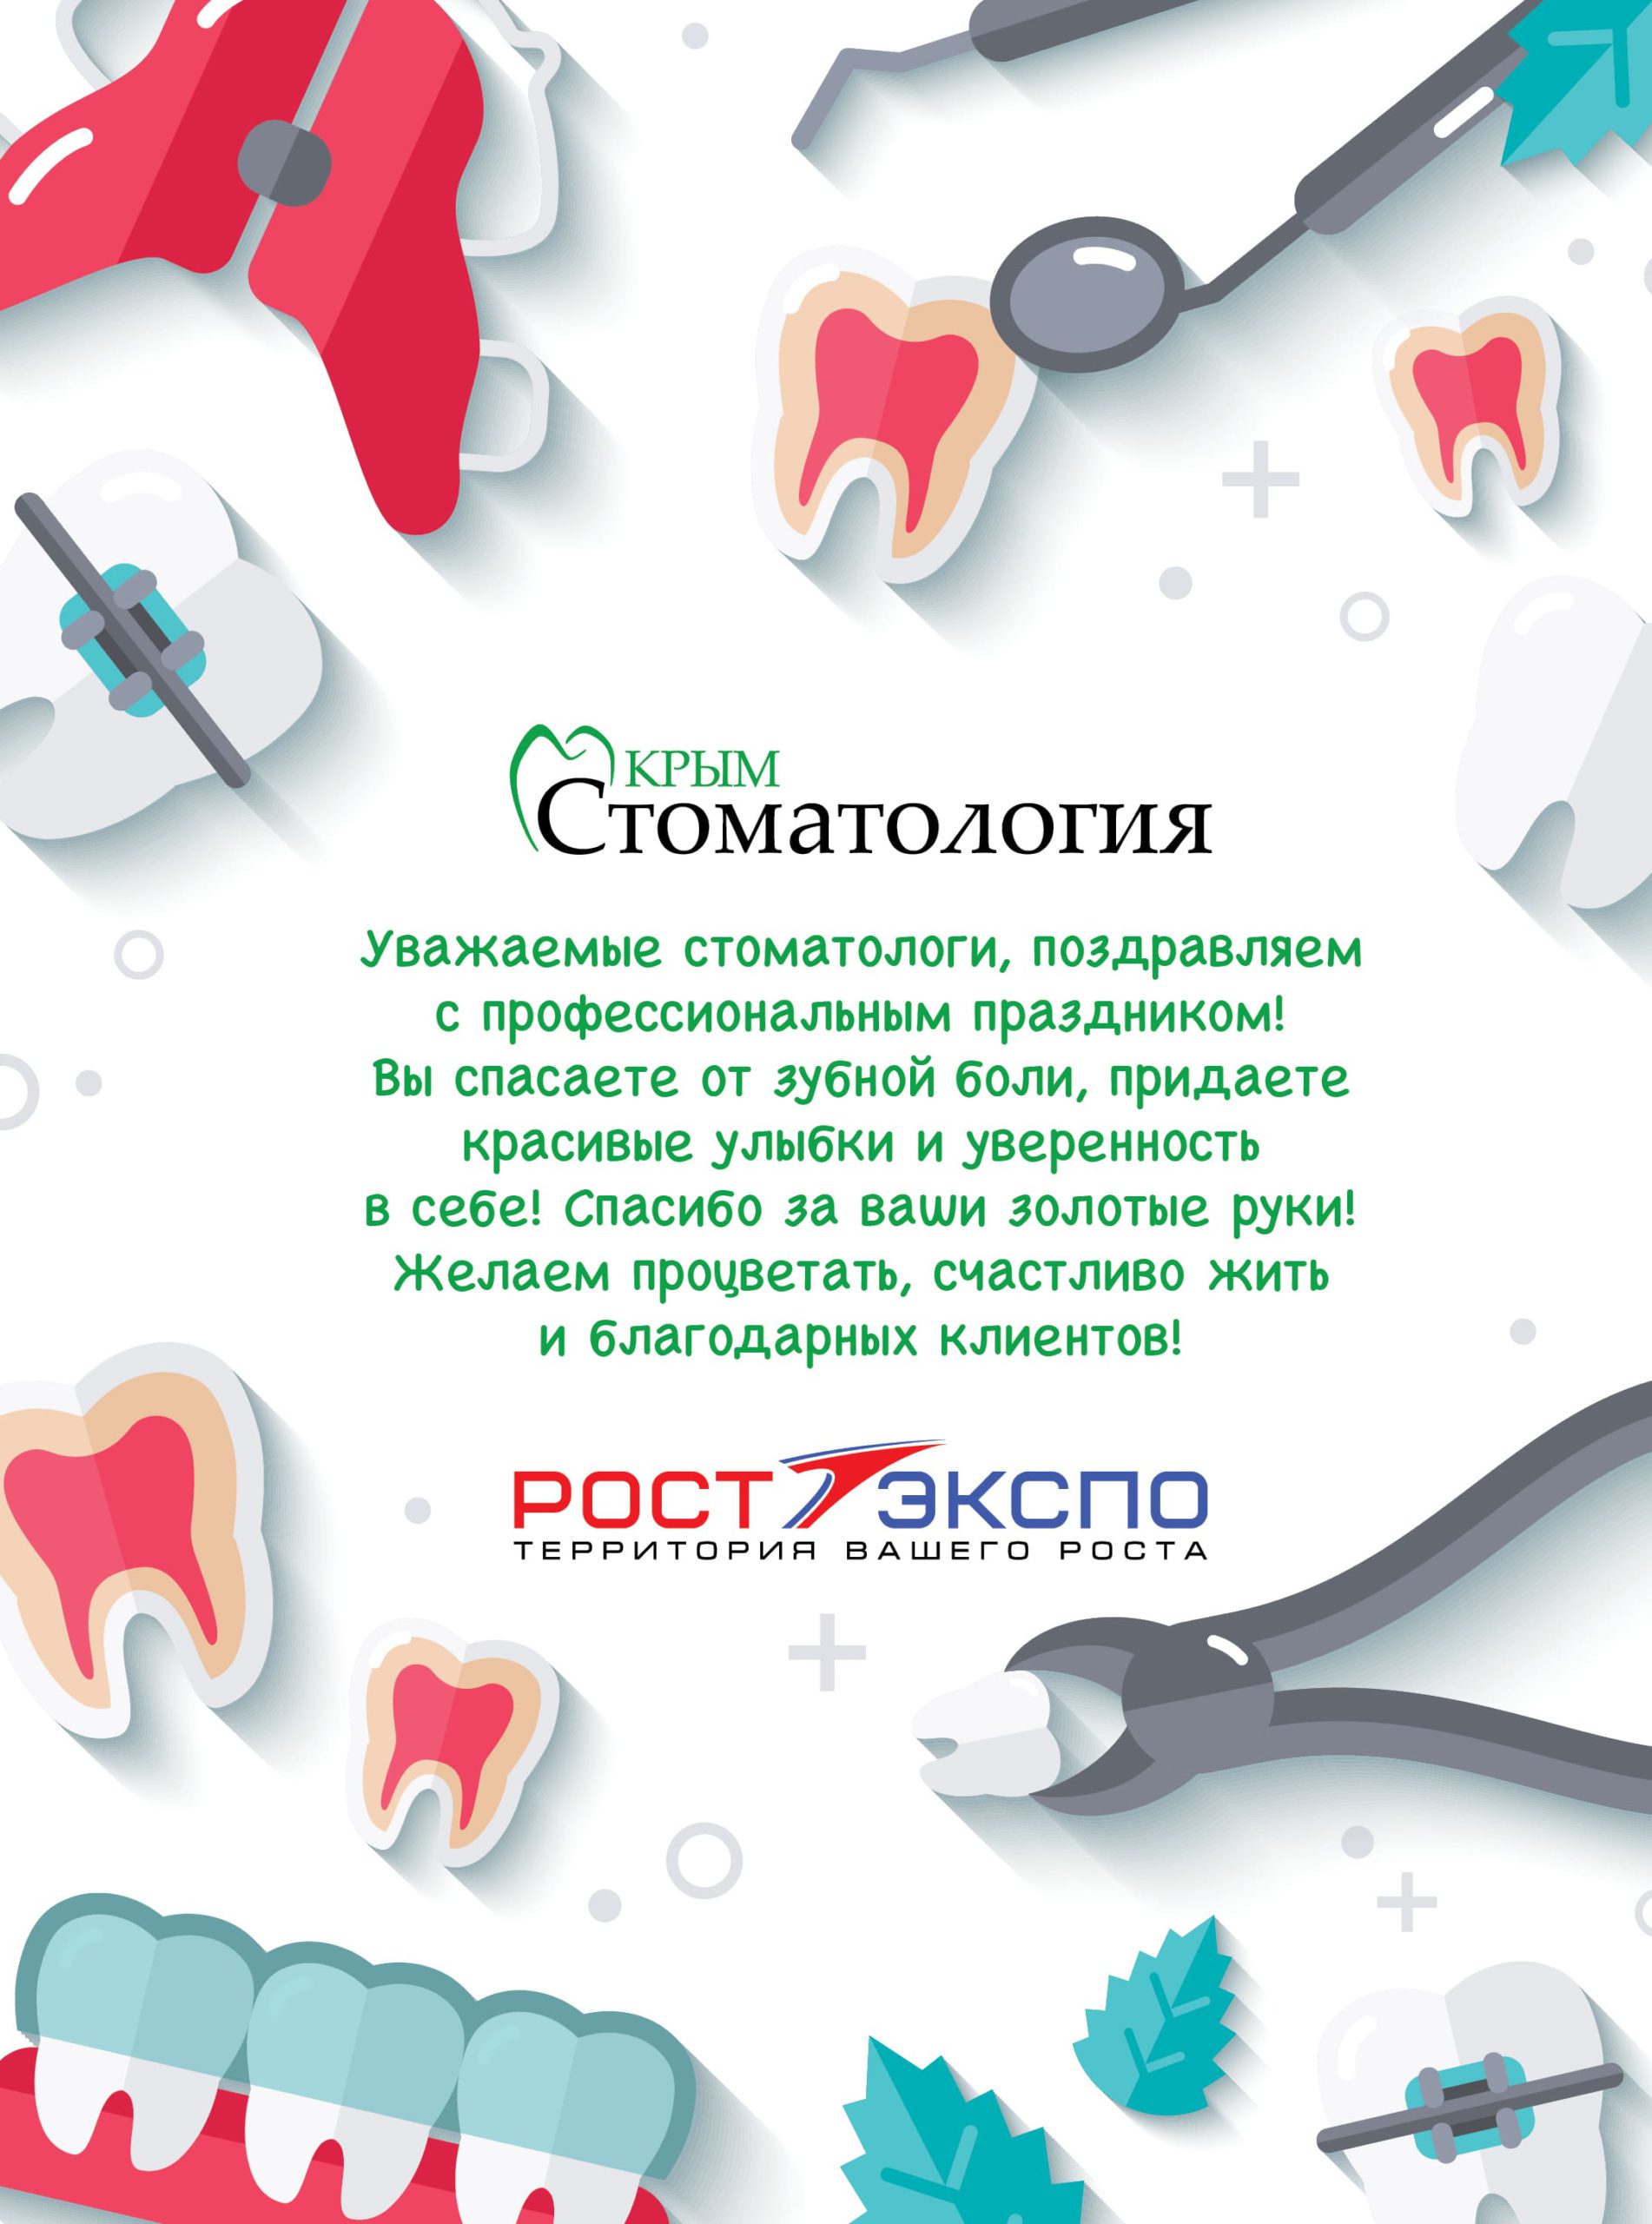 С международным Днем Стоматолога!